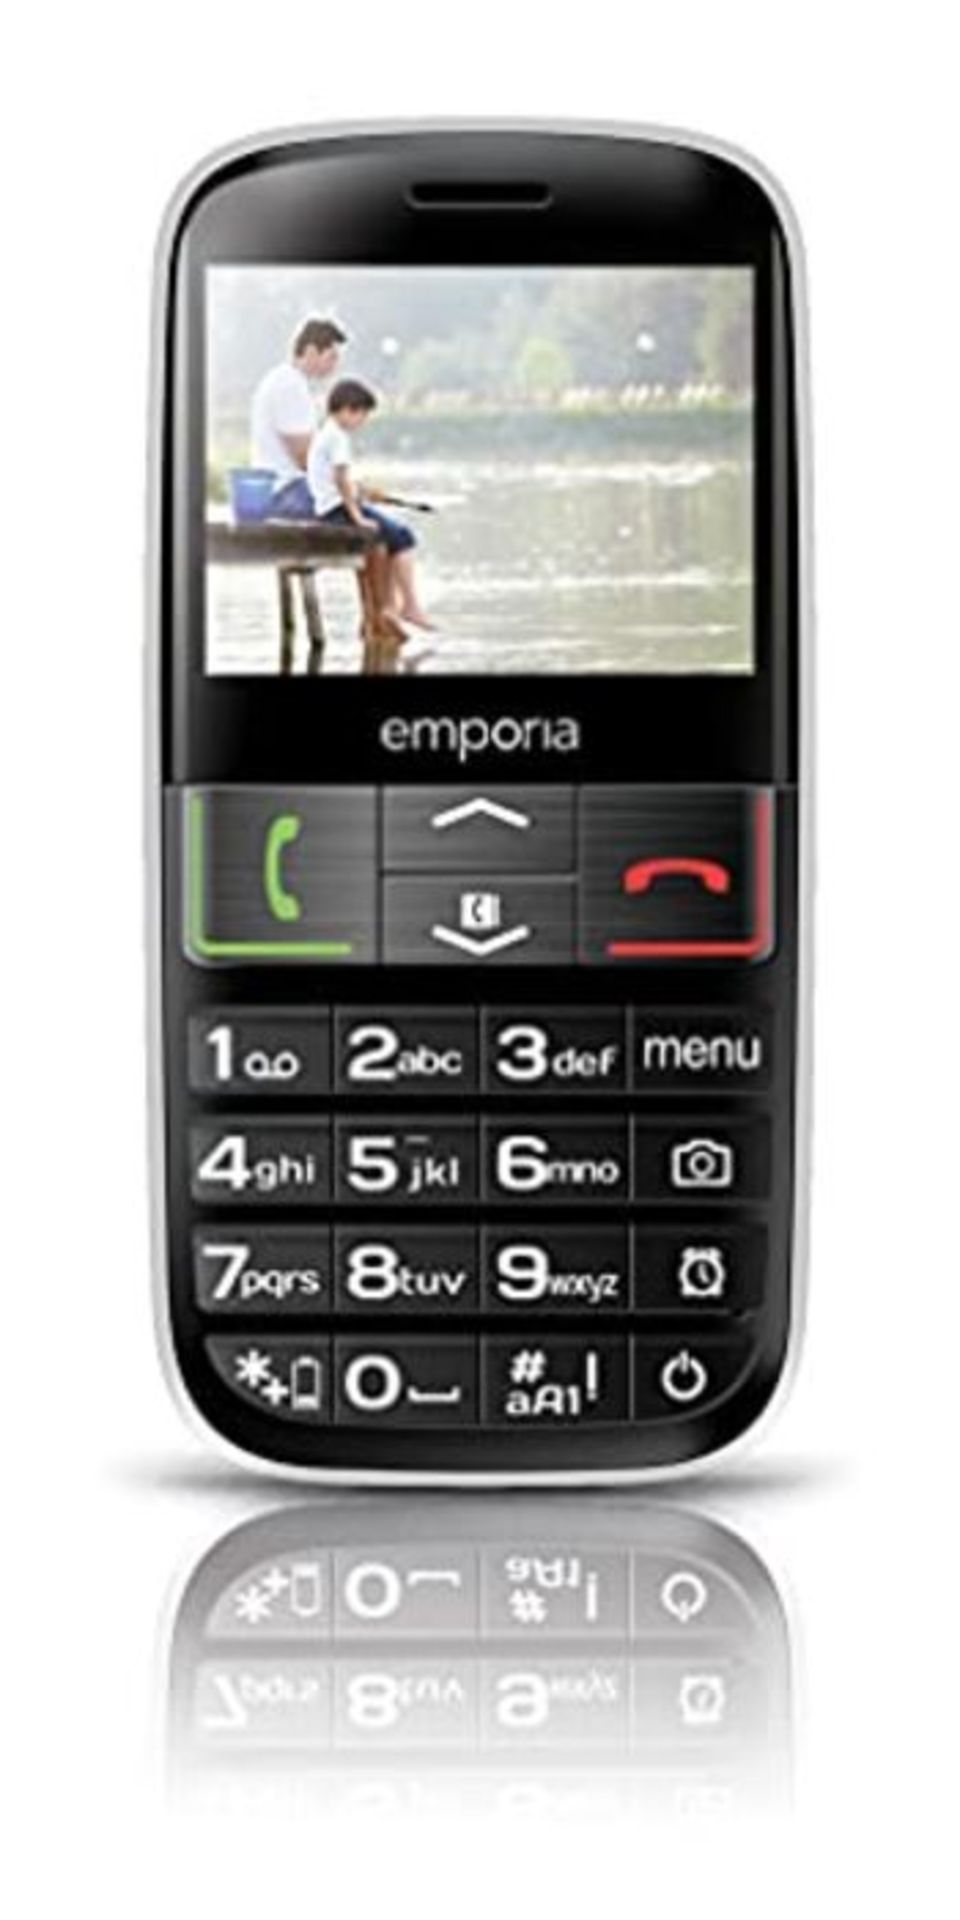 RRP £59.00 Emporia EUPHORIA 2.3" 90g Black, Silver - mobile phones (Single SIM, MiniSIM, Alarm cl